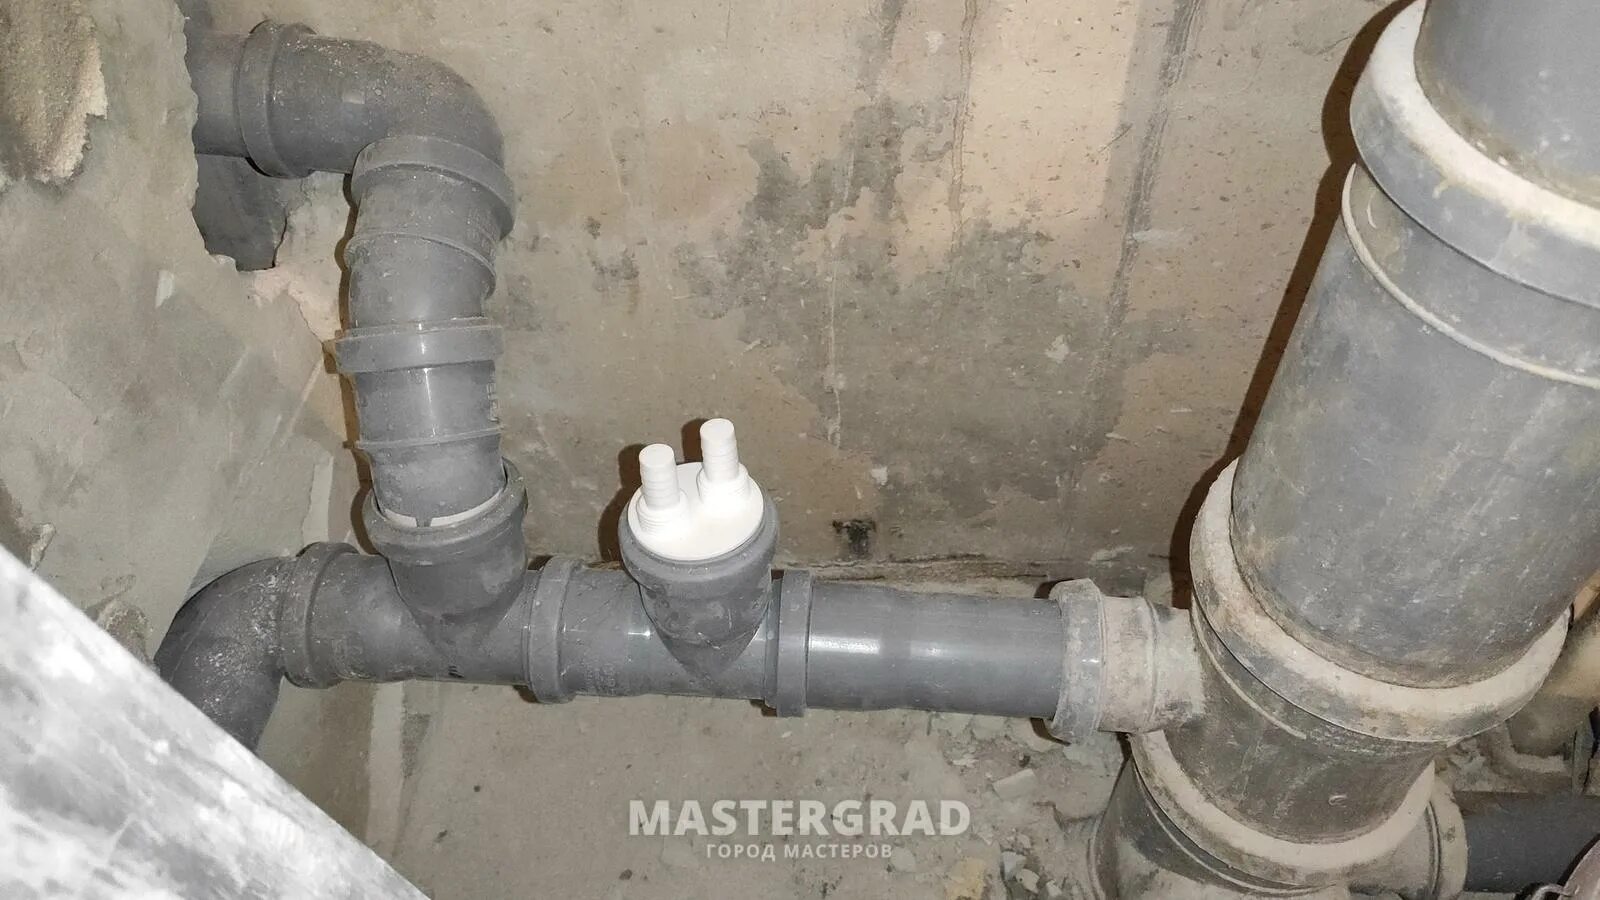 Воздушный разрыв. Разрыв струи для канализации ф 110. Разрыв струи в канализации что это такое. Воздушный разрыв в канализации. Воздушный разрыв в канализации пищеблока.